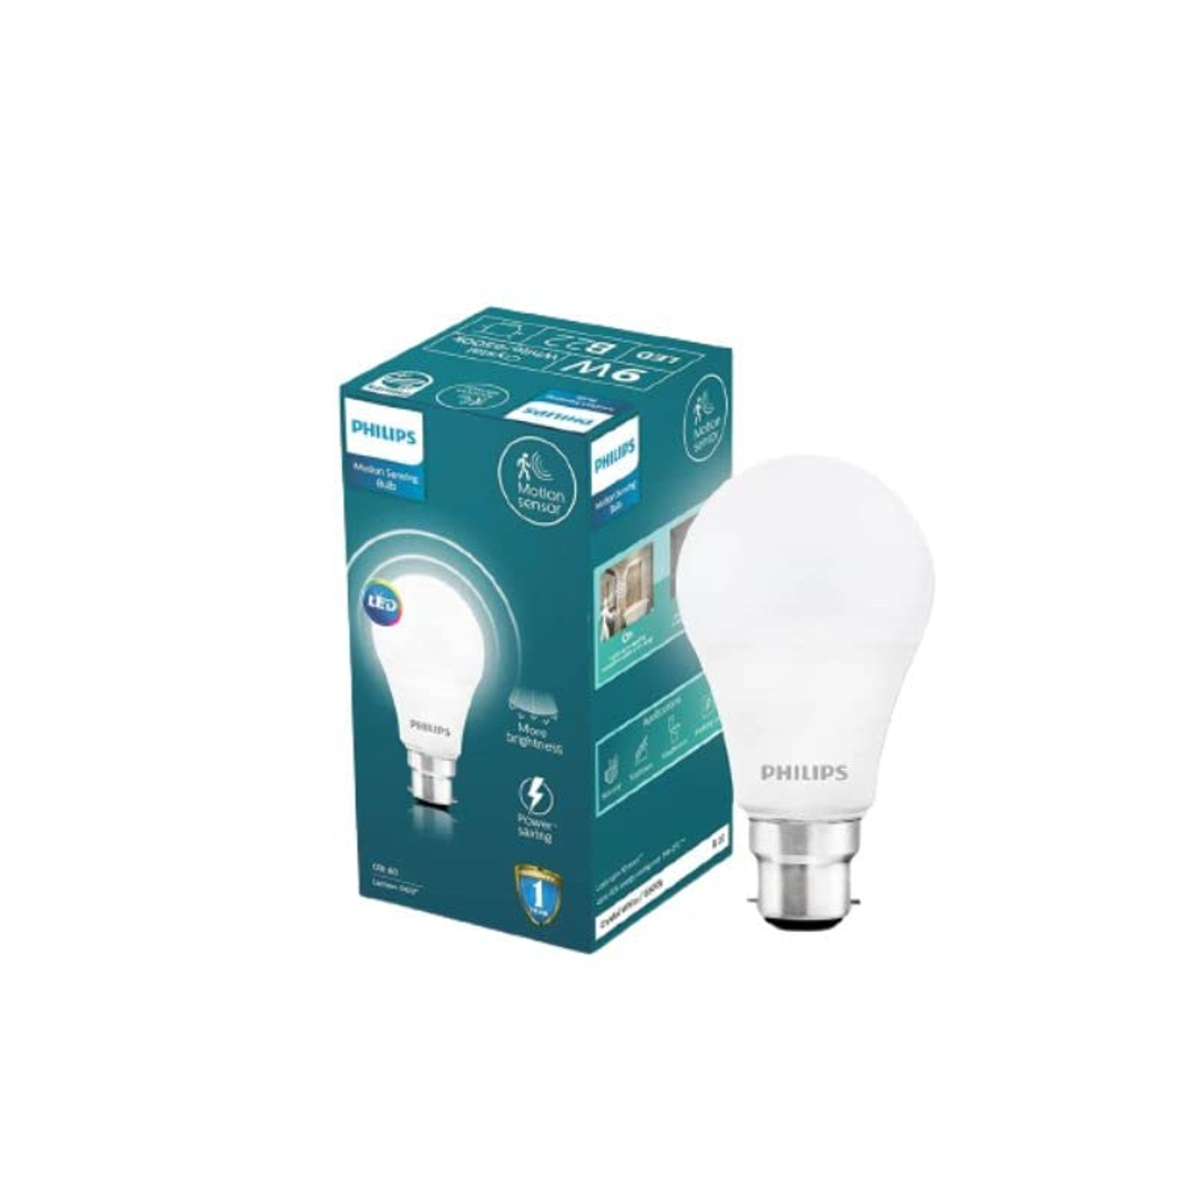 Philips Motion Sensing LED Bulb